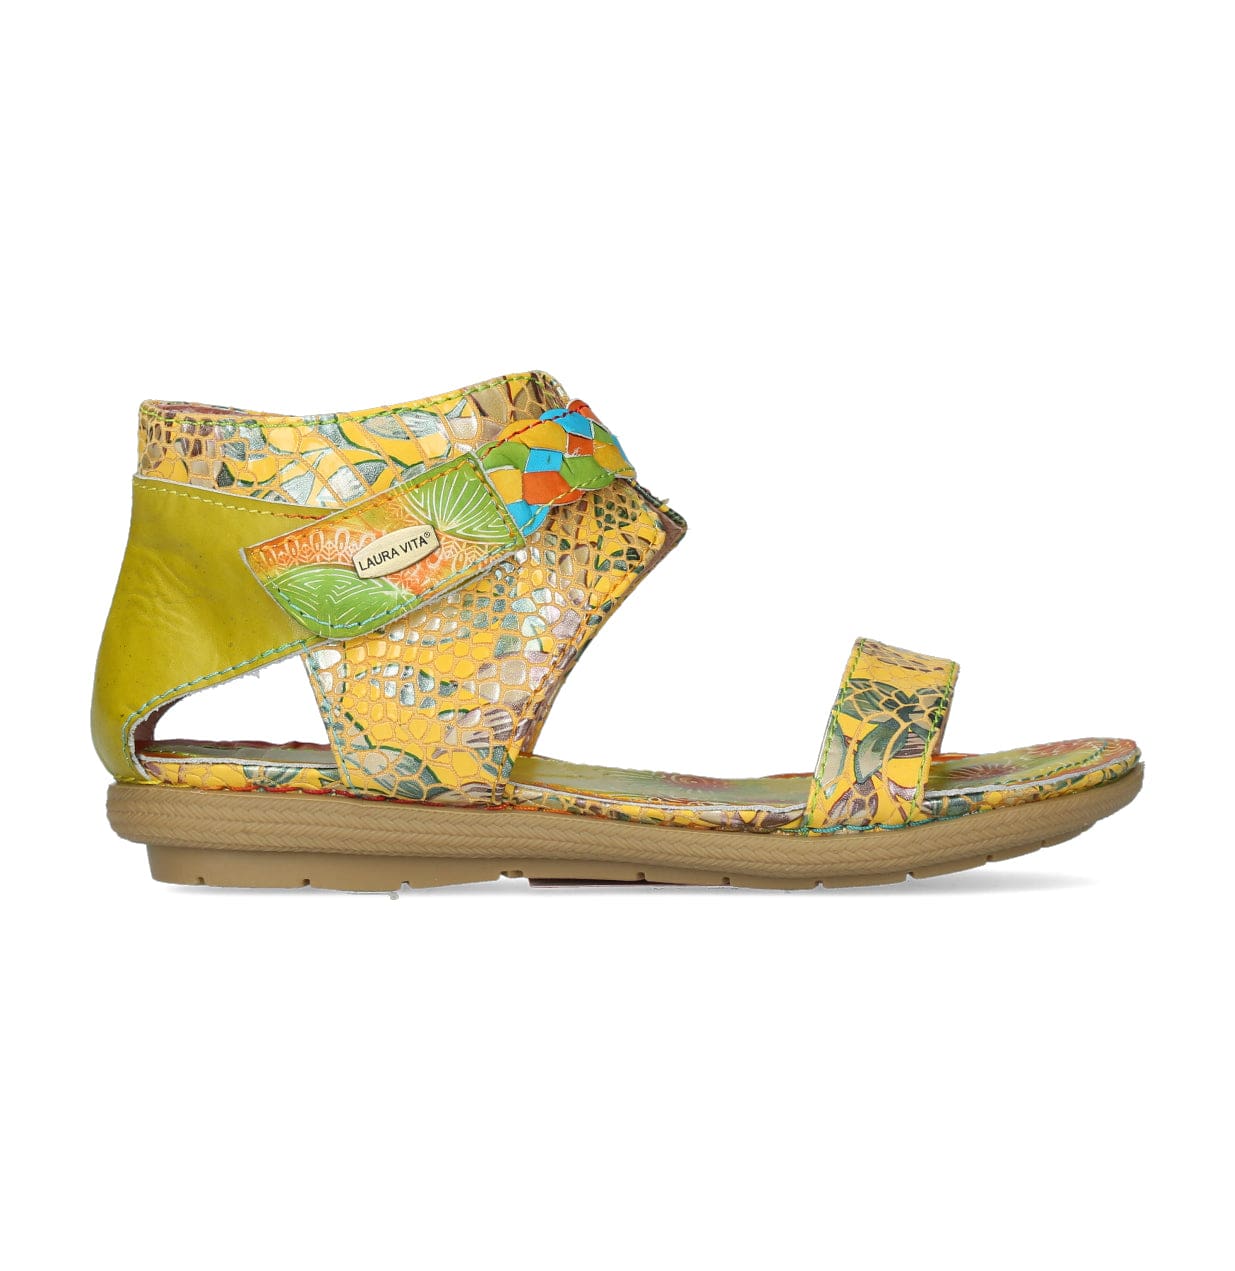 LIENO 04 shoes - 35 / Yellow - Sandal